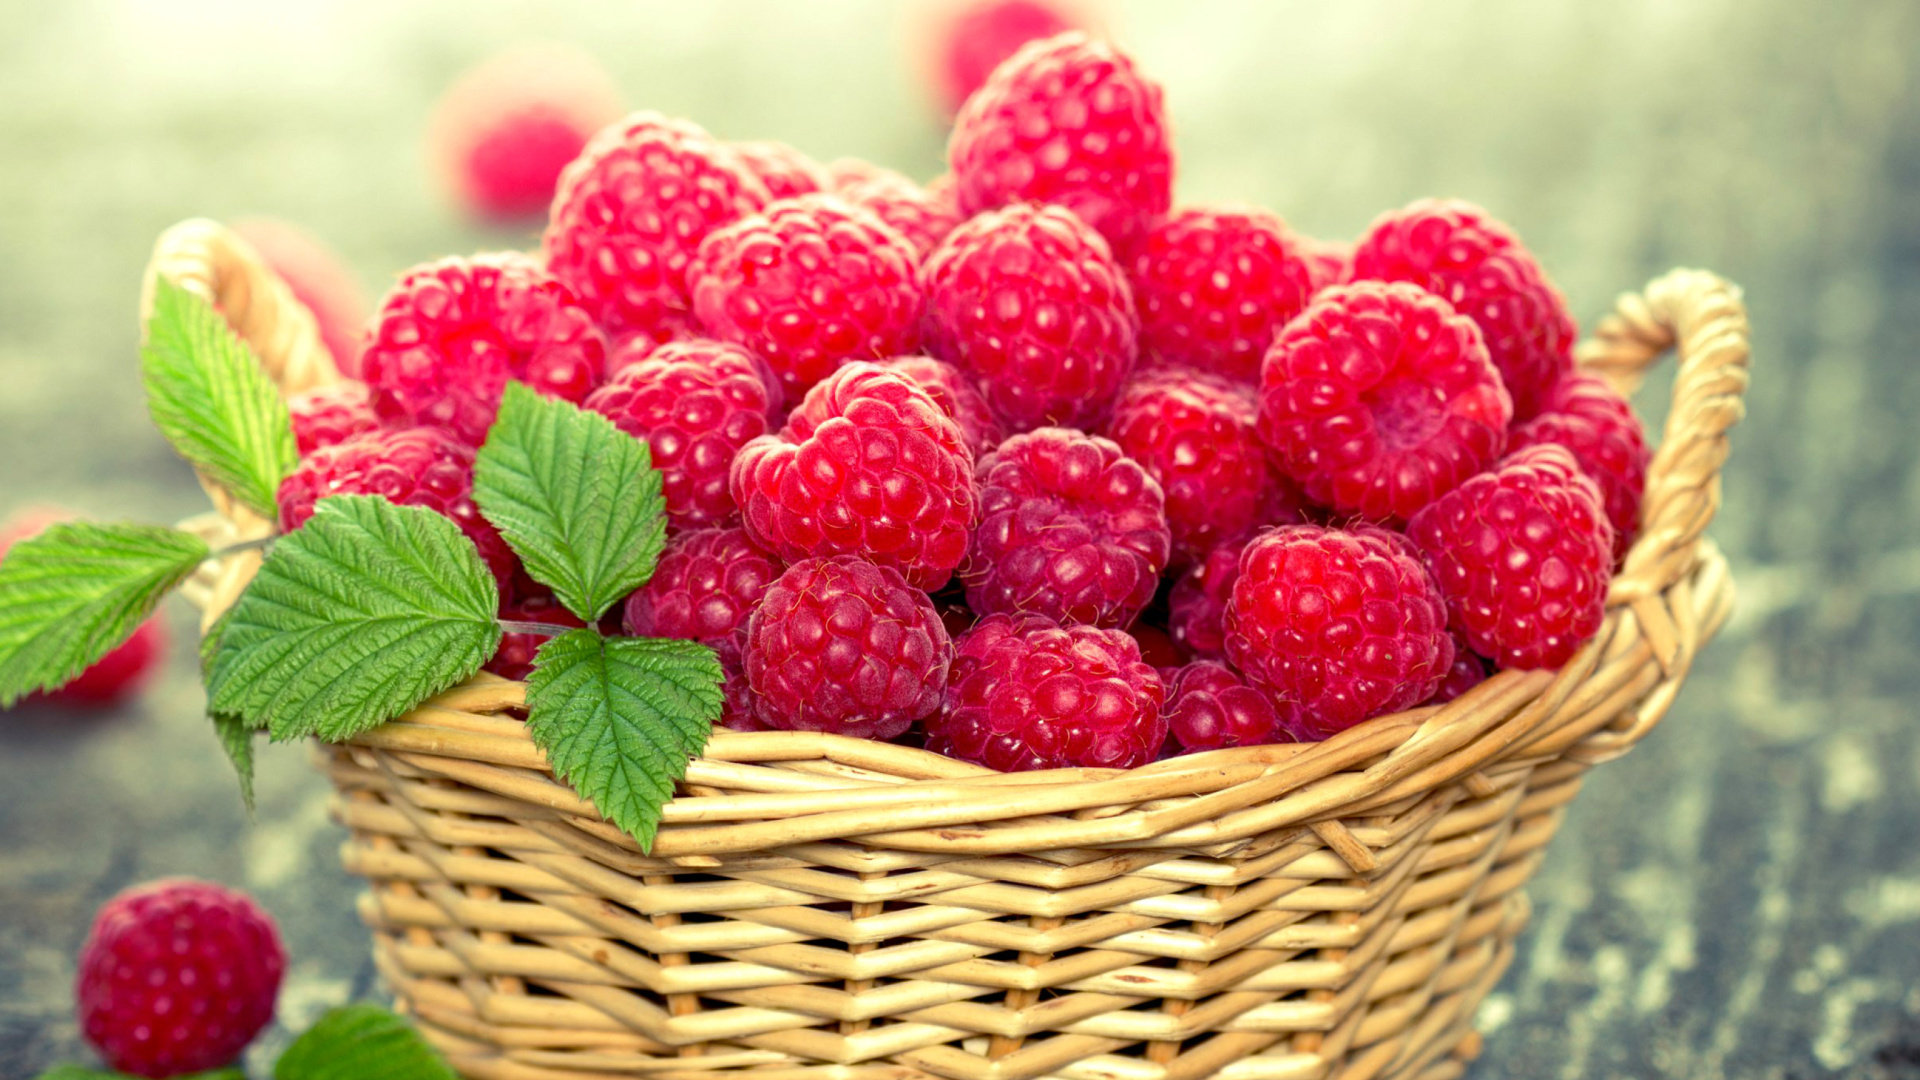 Sfondi Basket with raspberries 1920x1080